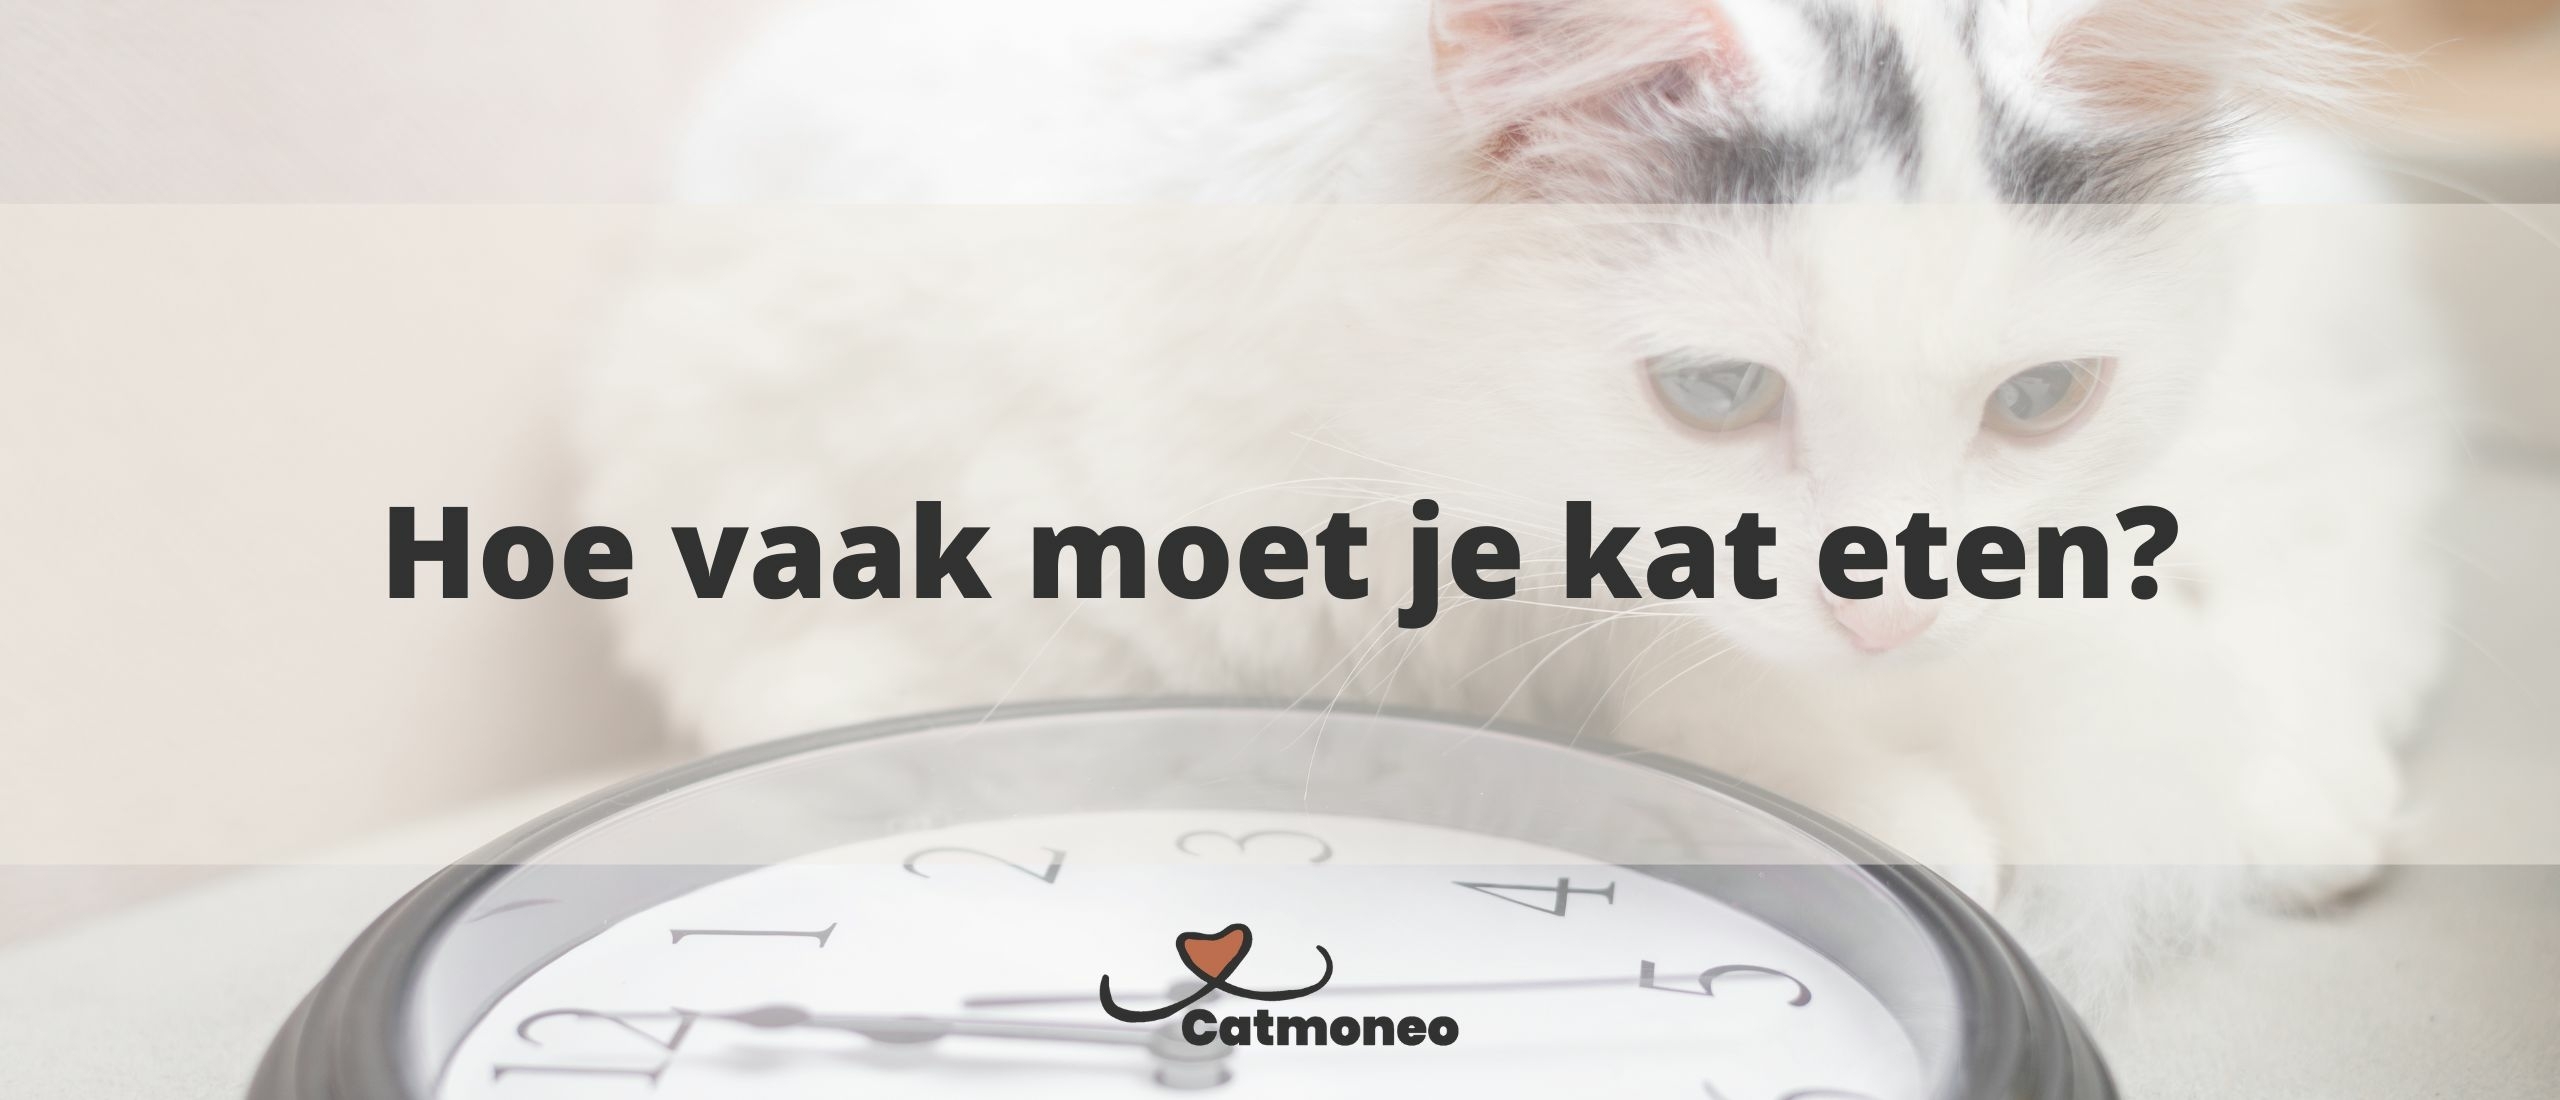 Hoe vaak moet je kat eten?